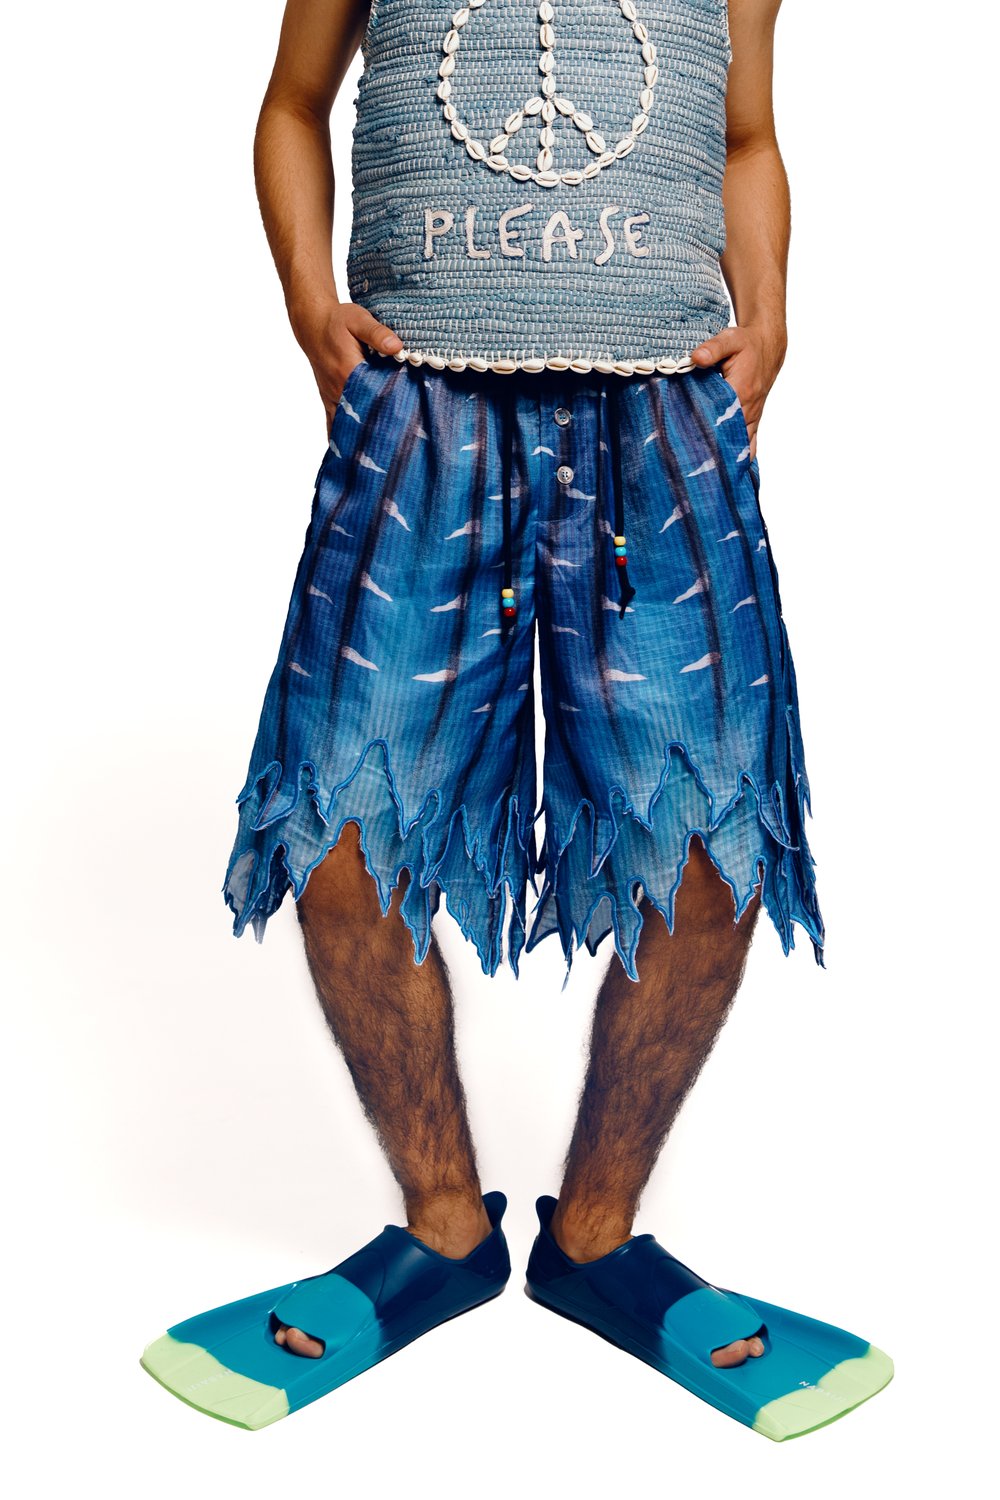 FISH BERMUDA shorts